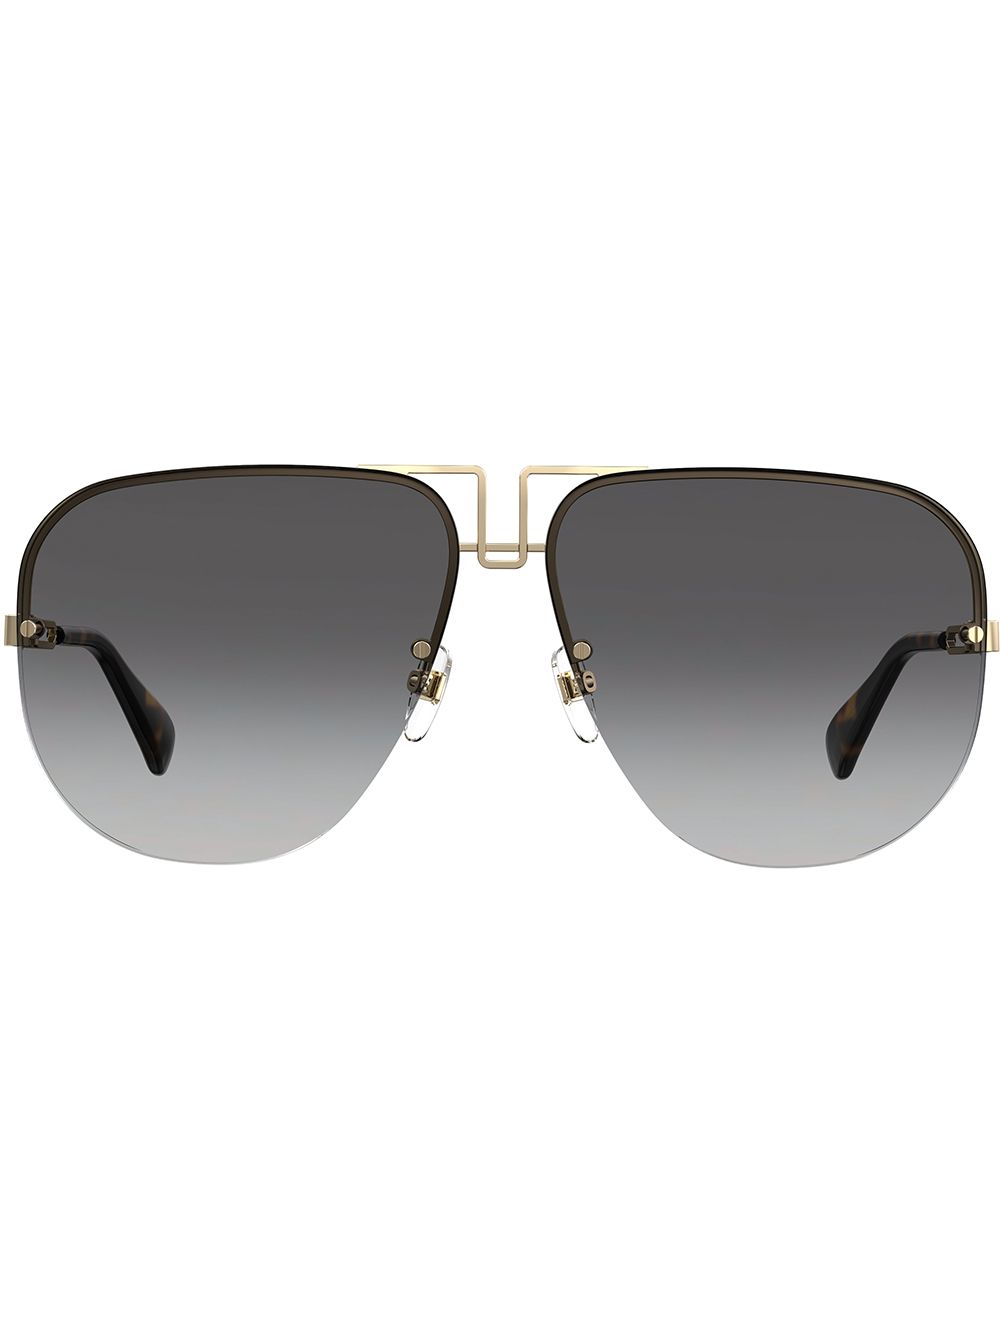 фото Givenchy Eyewear массивные солнцезащитные очки-авиаторы